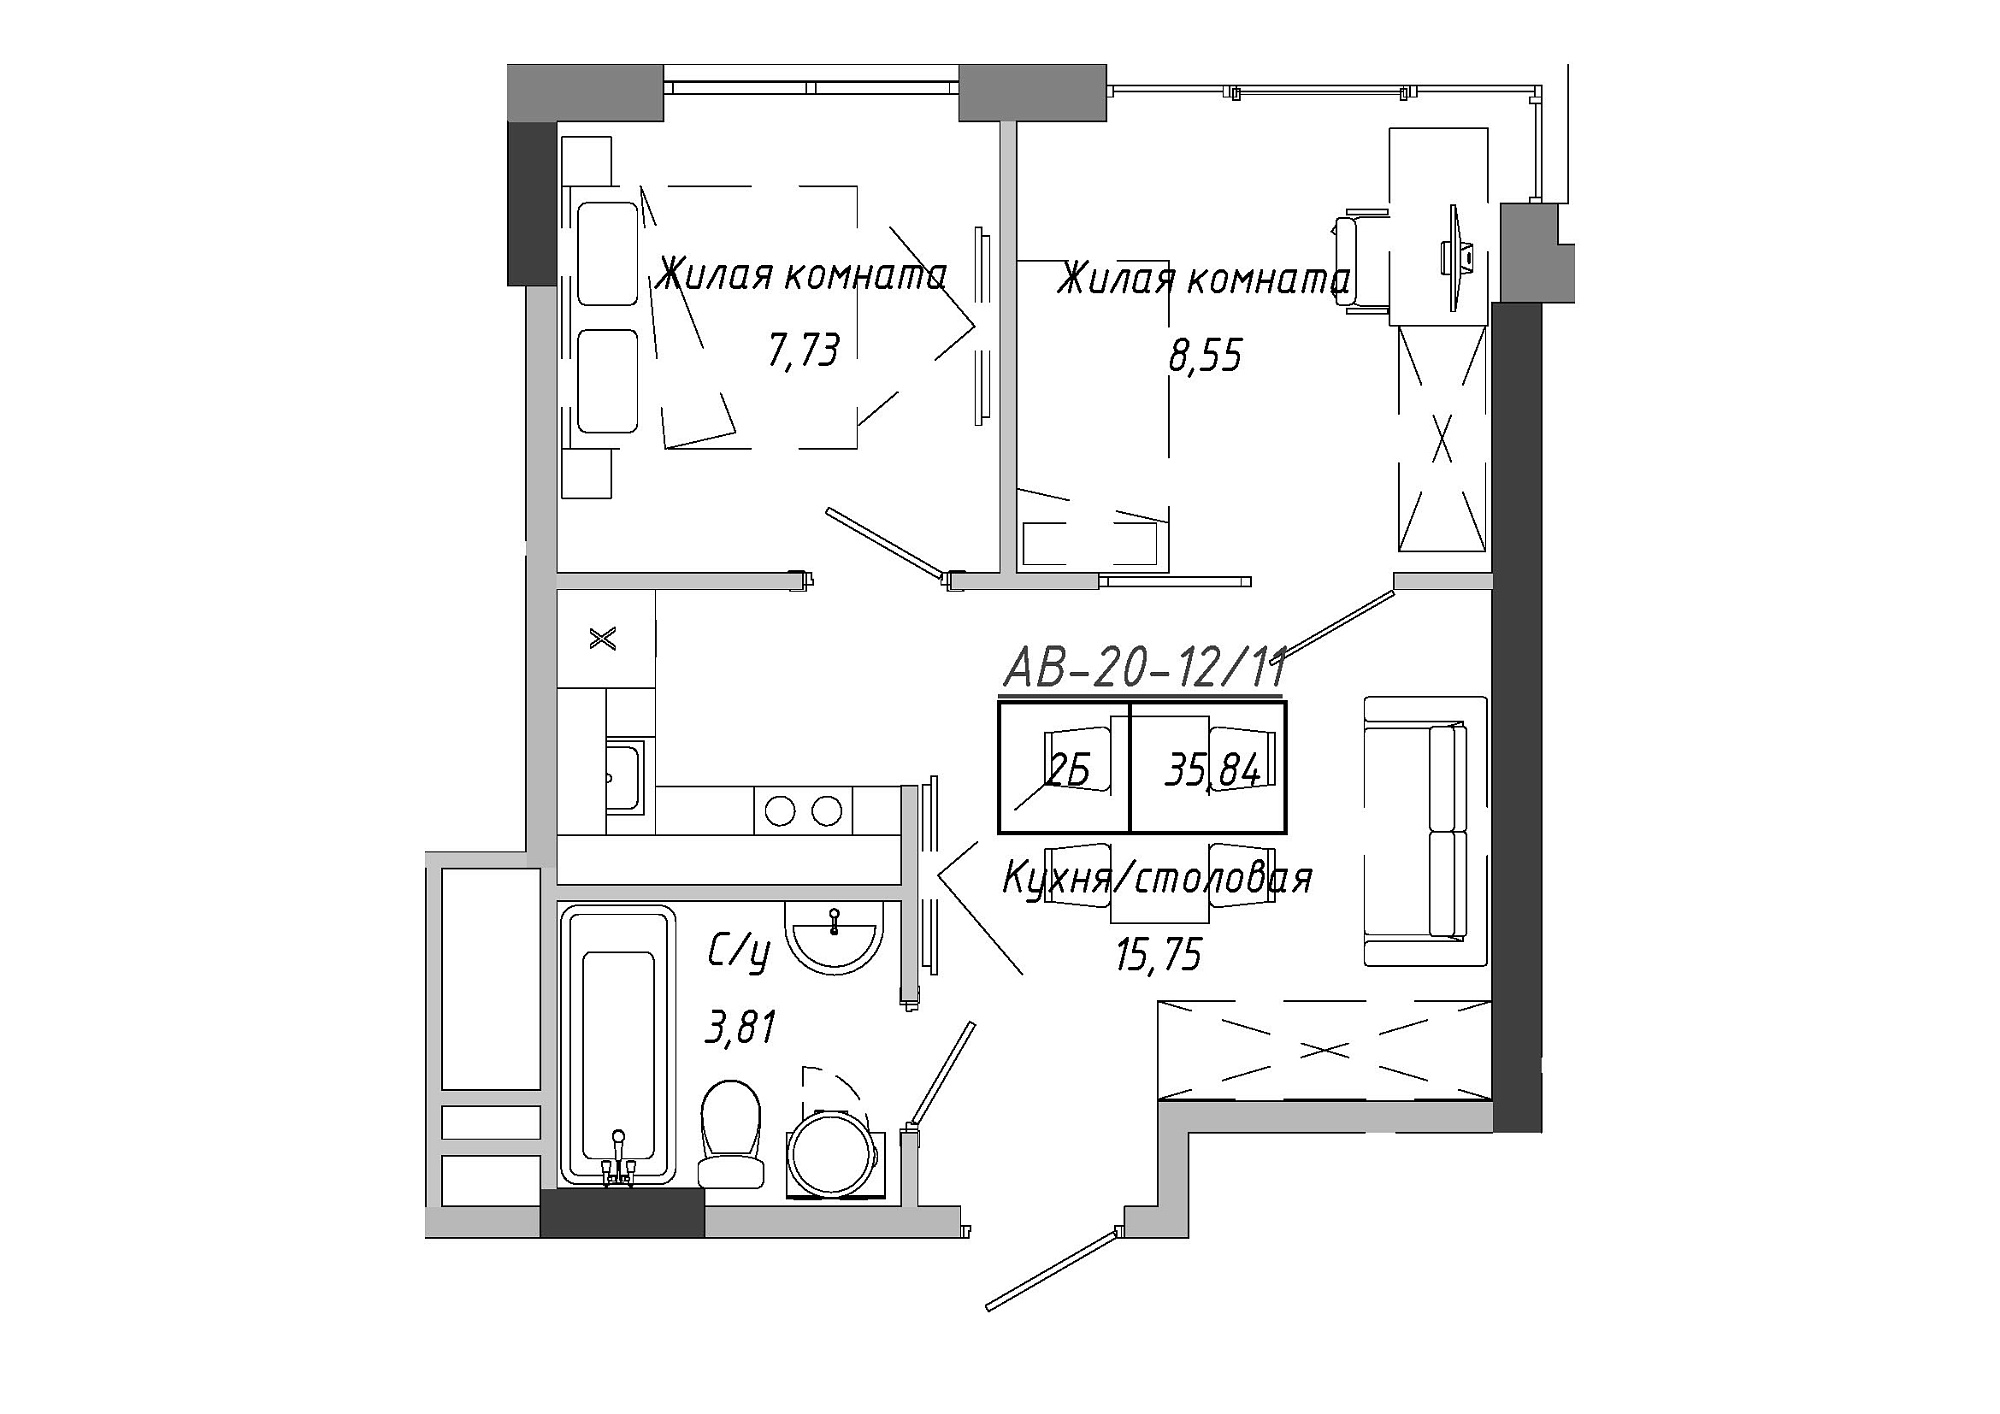 Планування 2-к квартира площею 36.12м2, AB-20-12/00011.